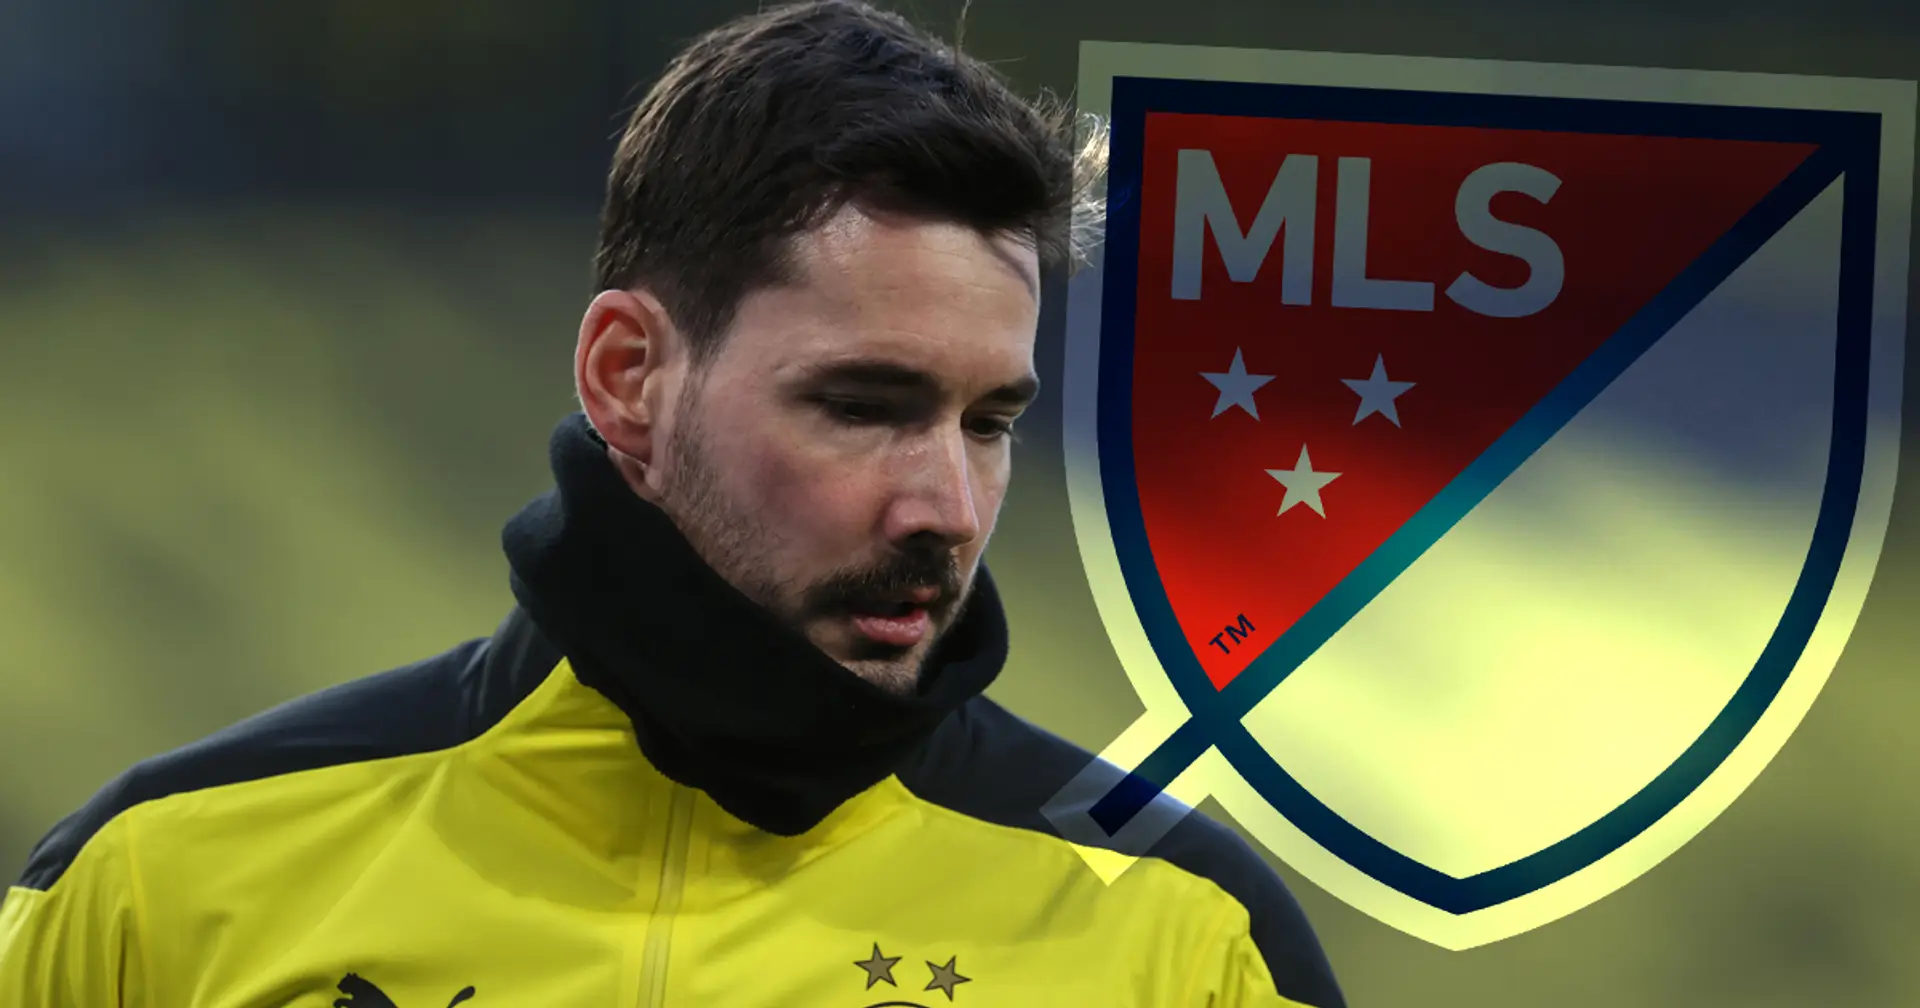 Bericht: Roman Bürki wird in die MLS wechseln, er hat auf Transfer zu Bayern verzichtet